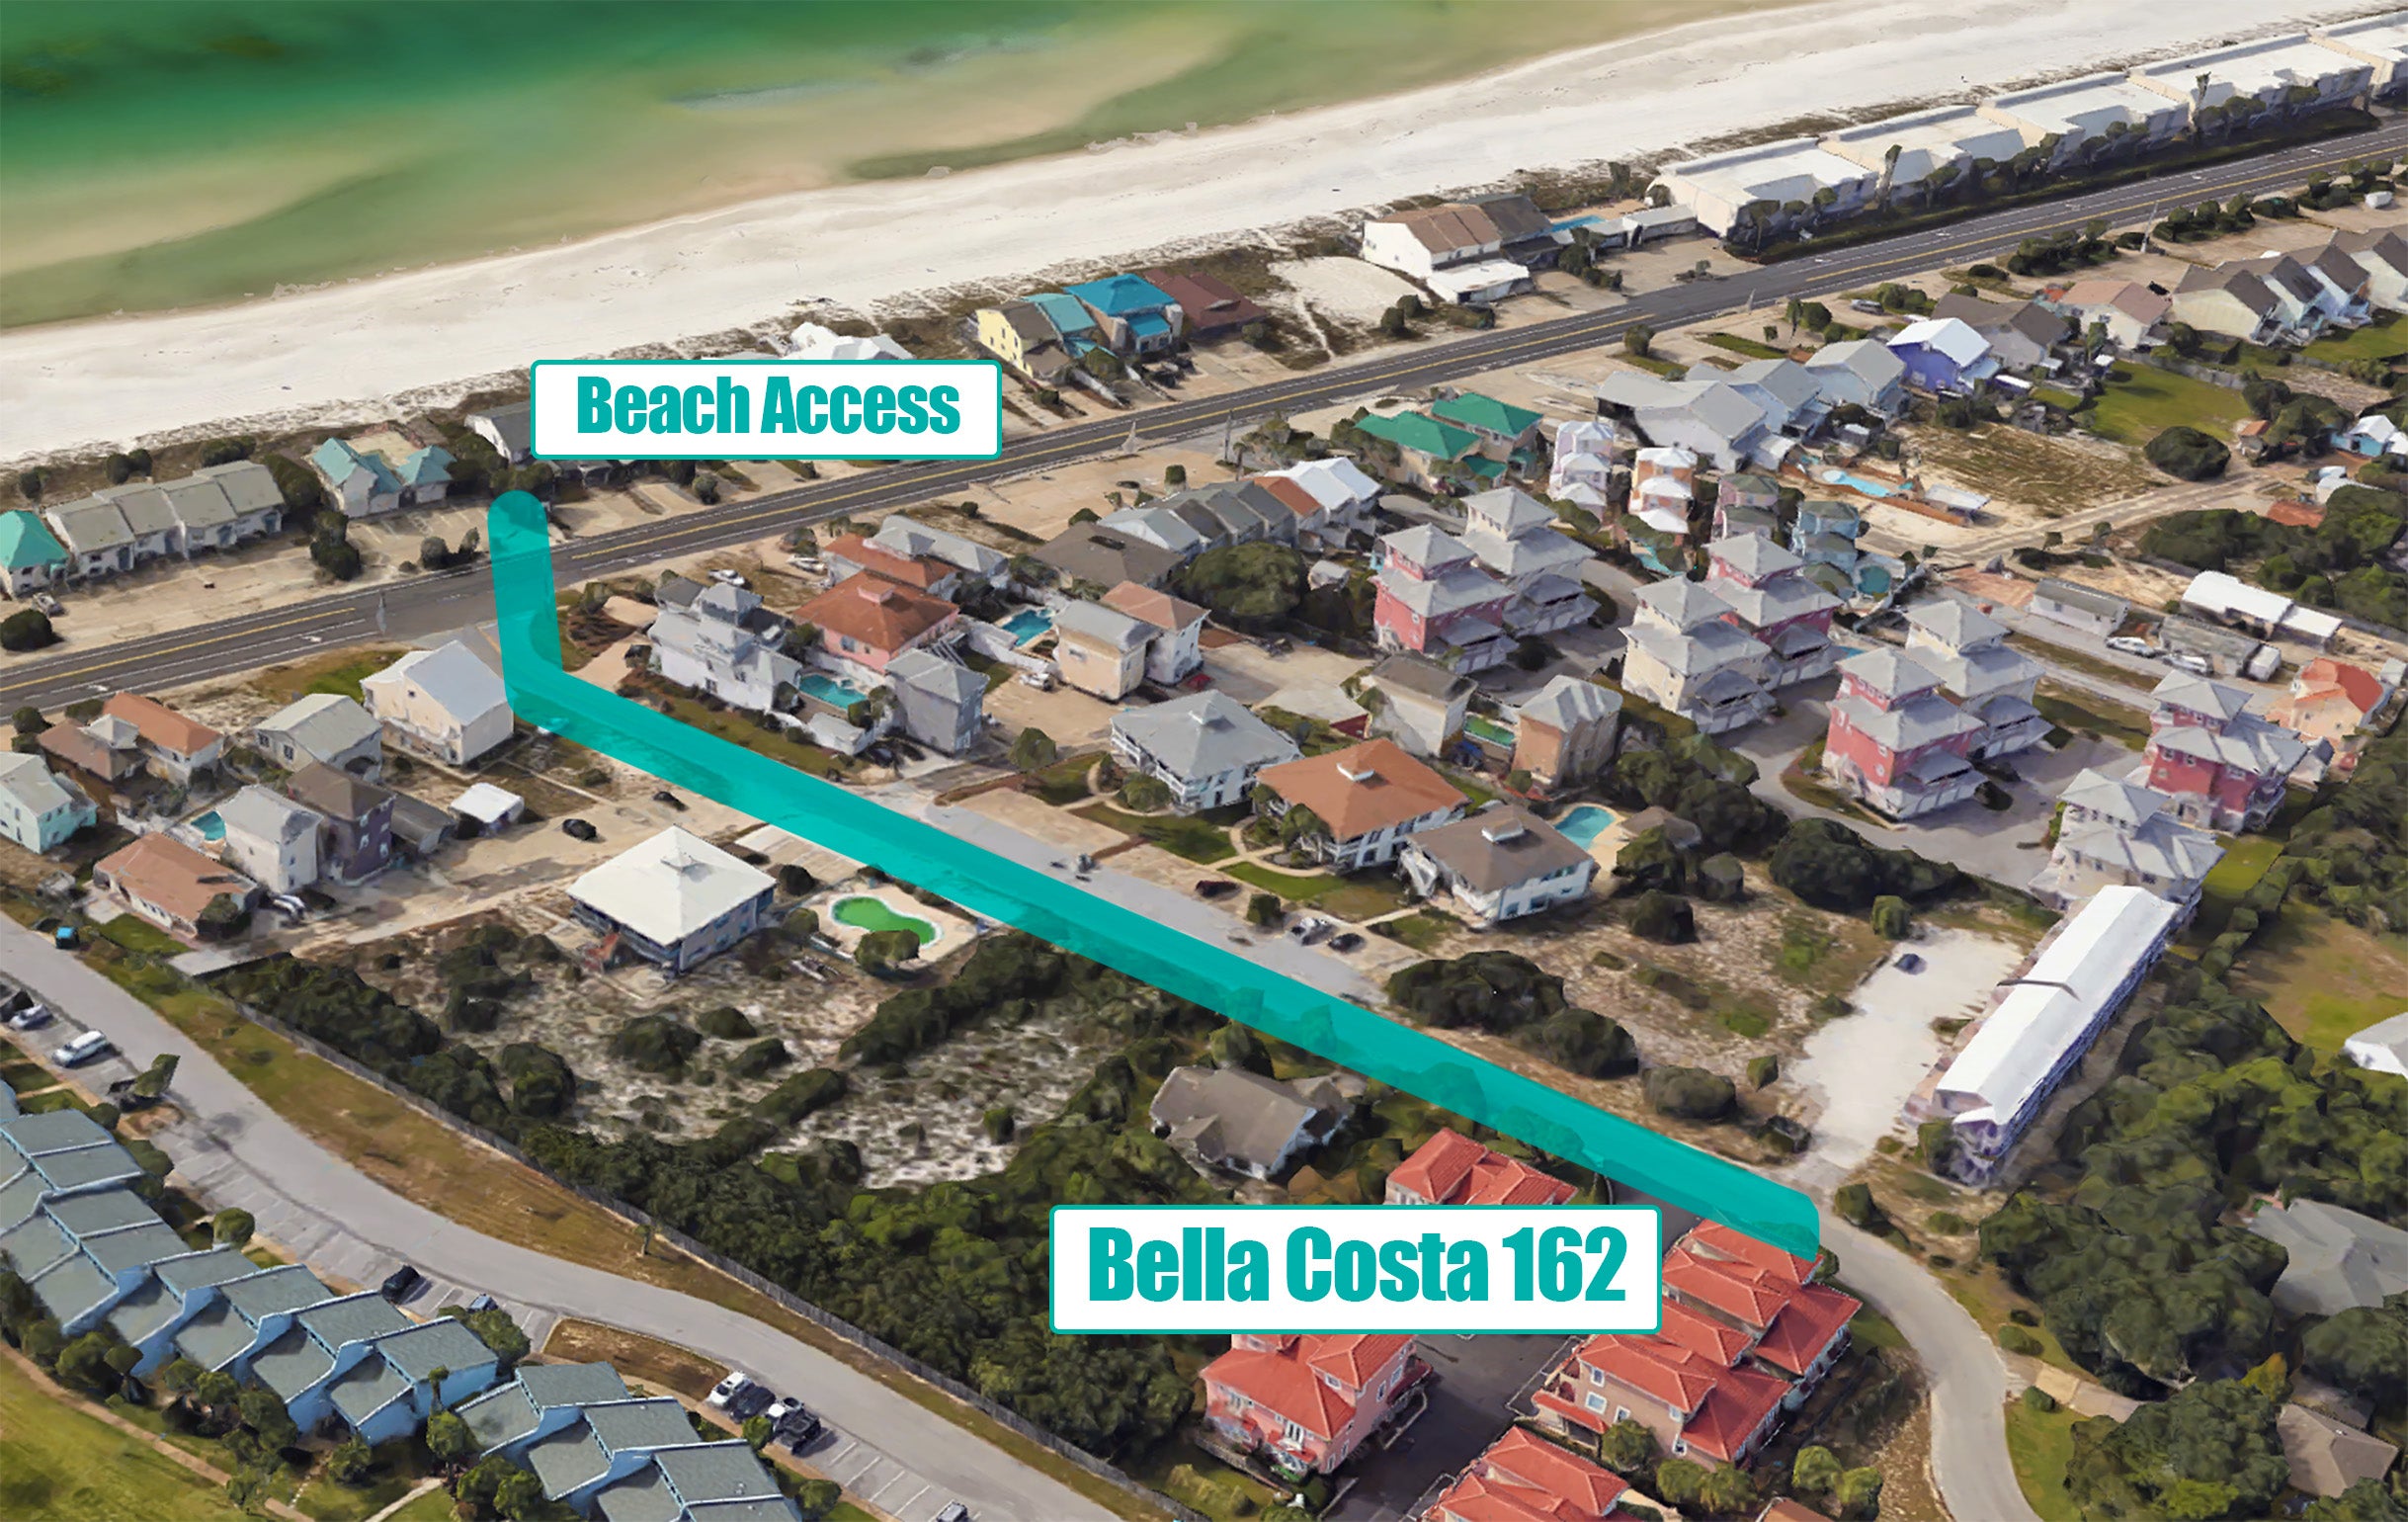 Bella Costa 162 Beach Access